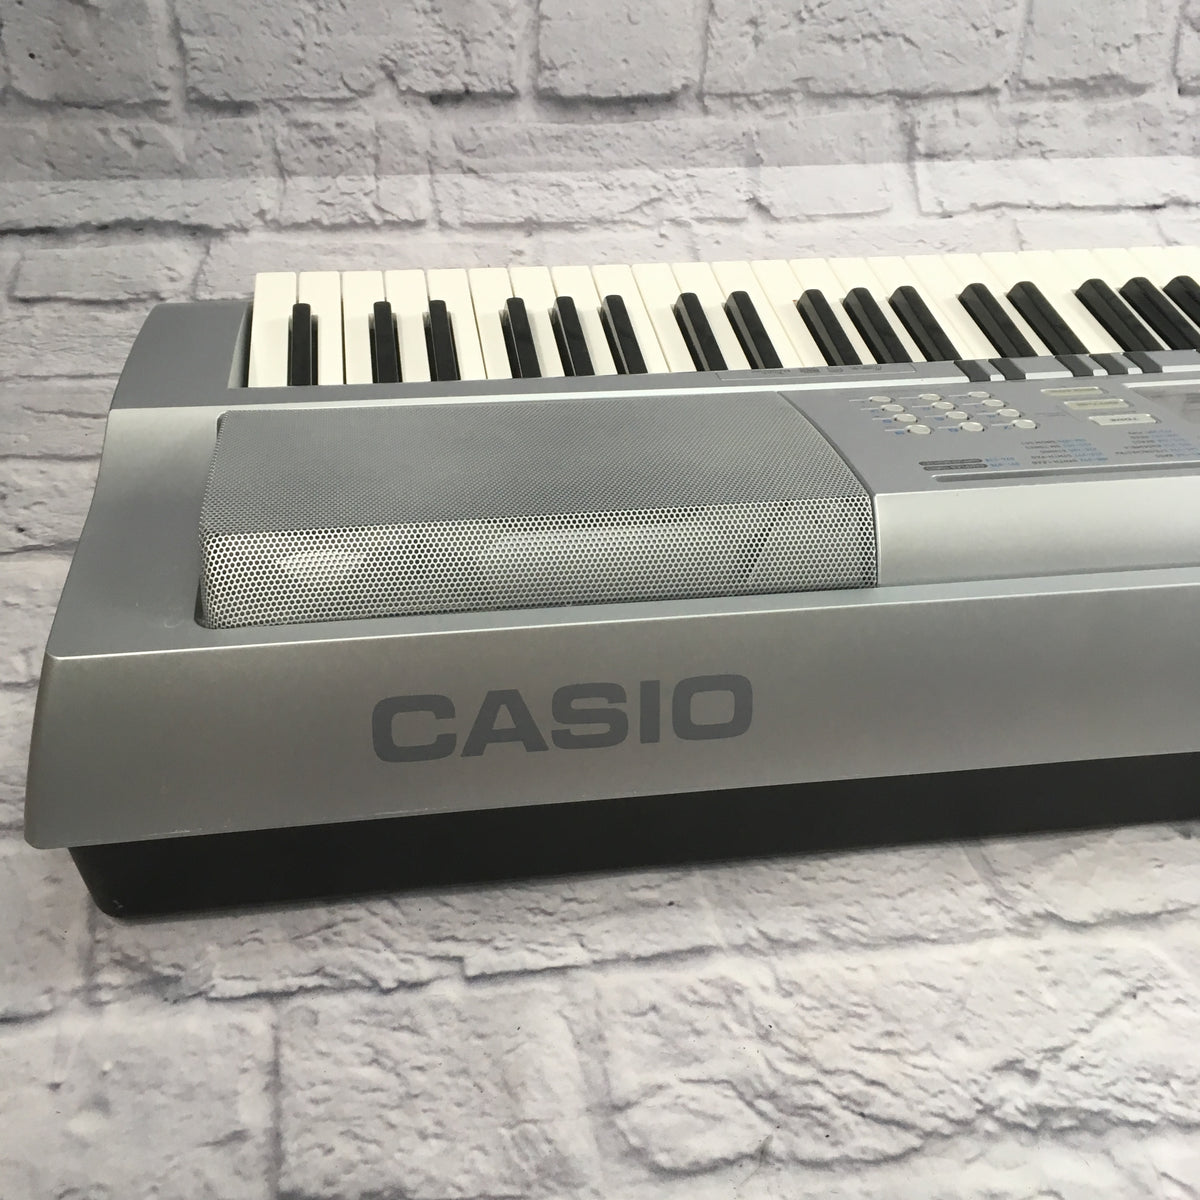 liepeltdesign: Casio Wk210 Digital Keyboard